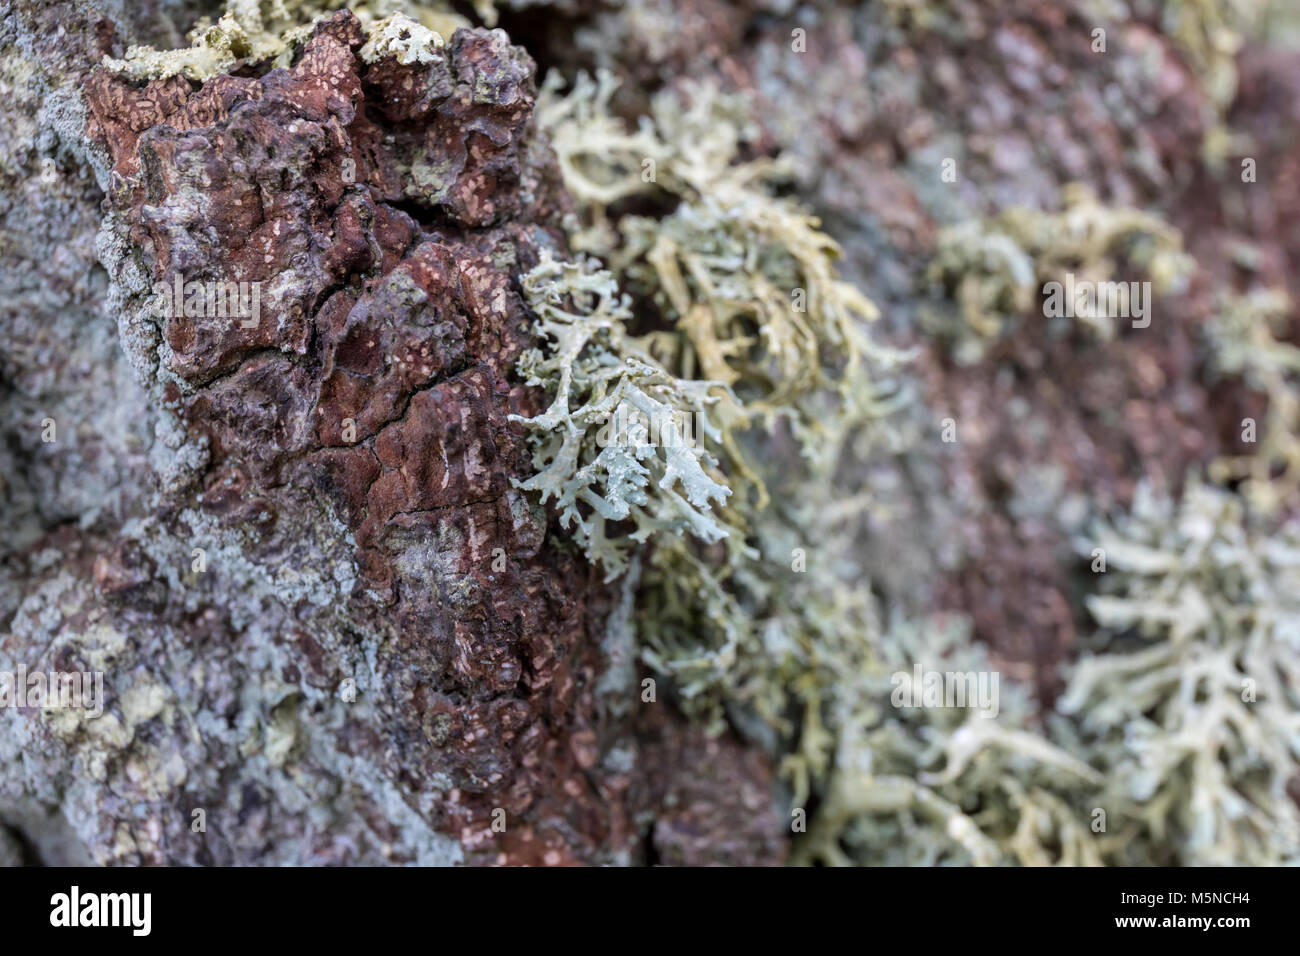 Lichen on wood; Denmark Stock Photo